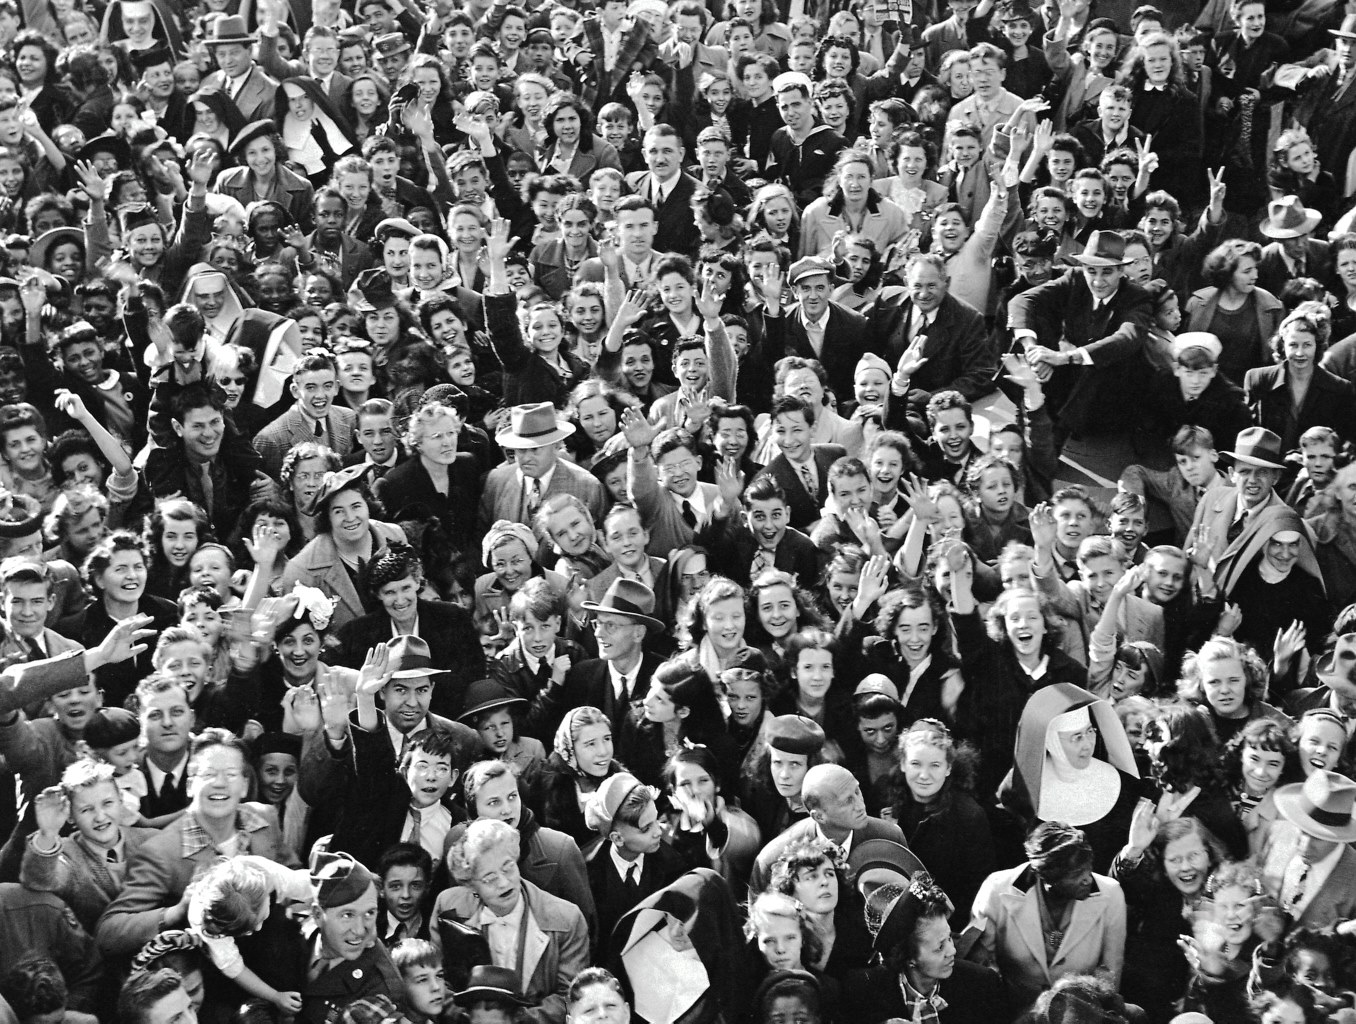 фотография толпы людей